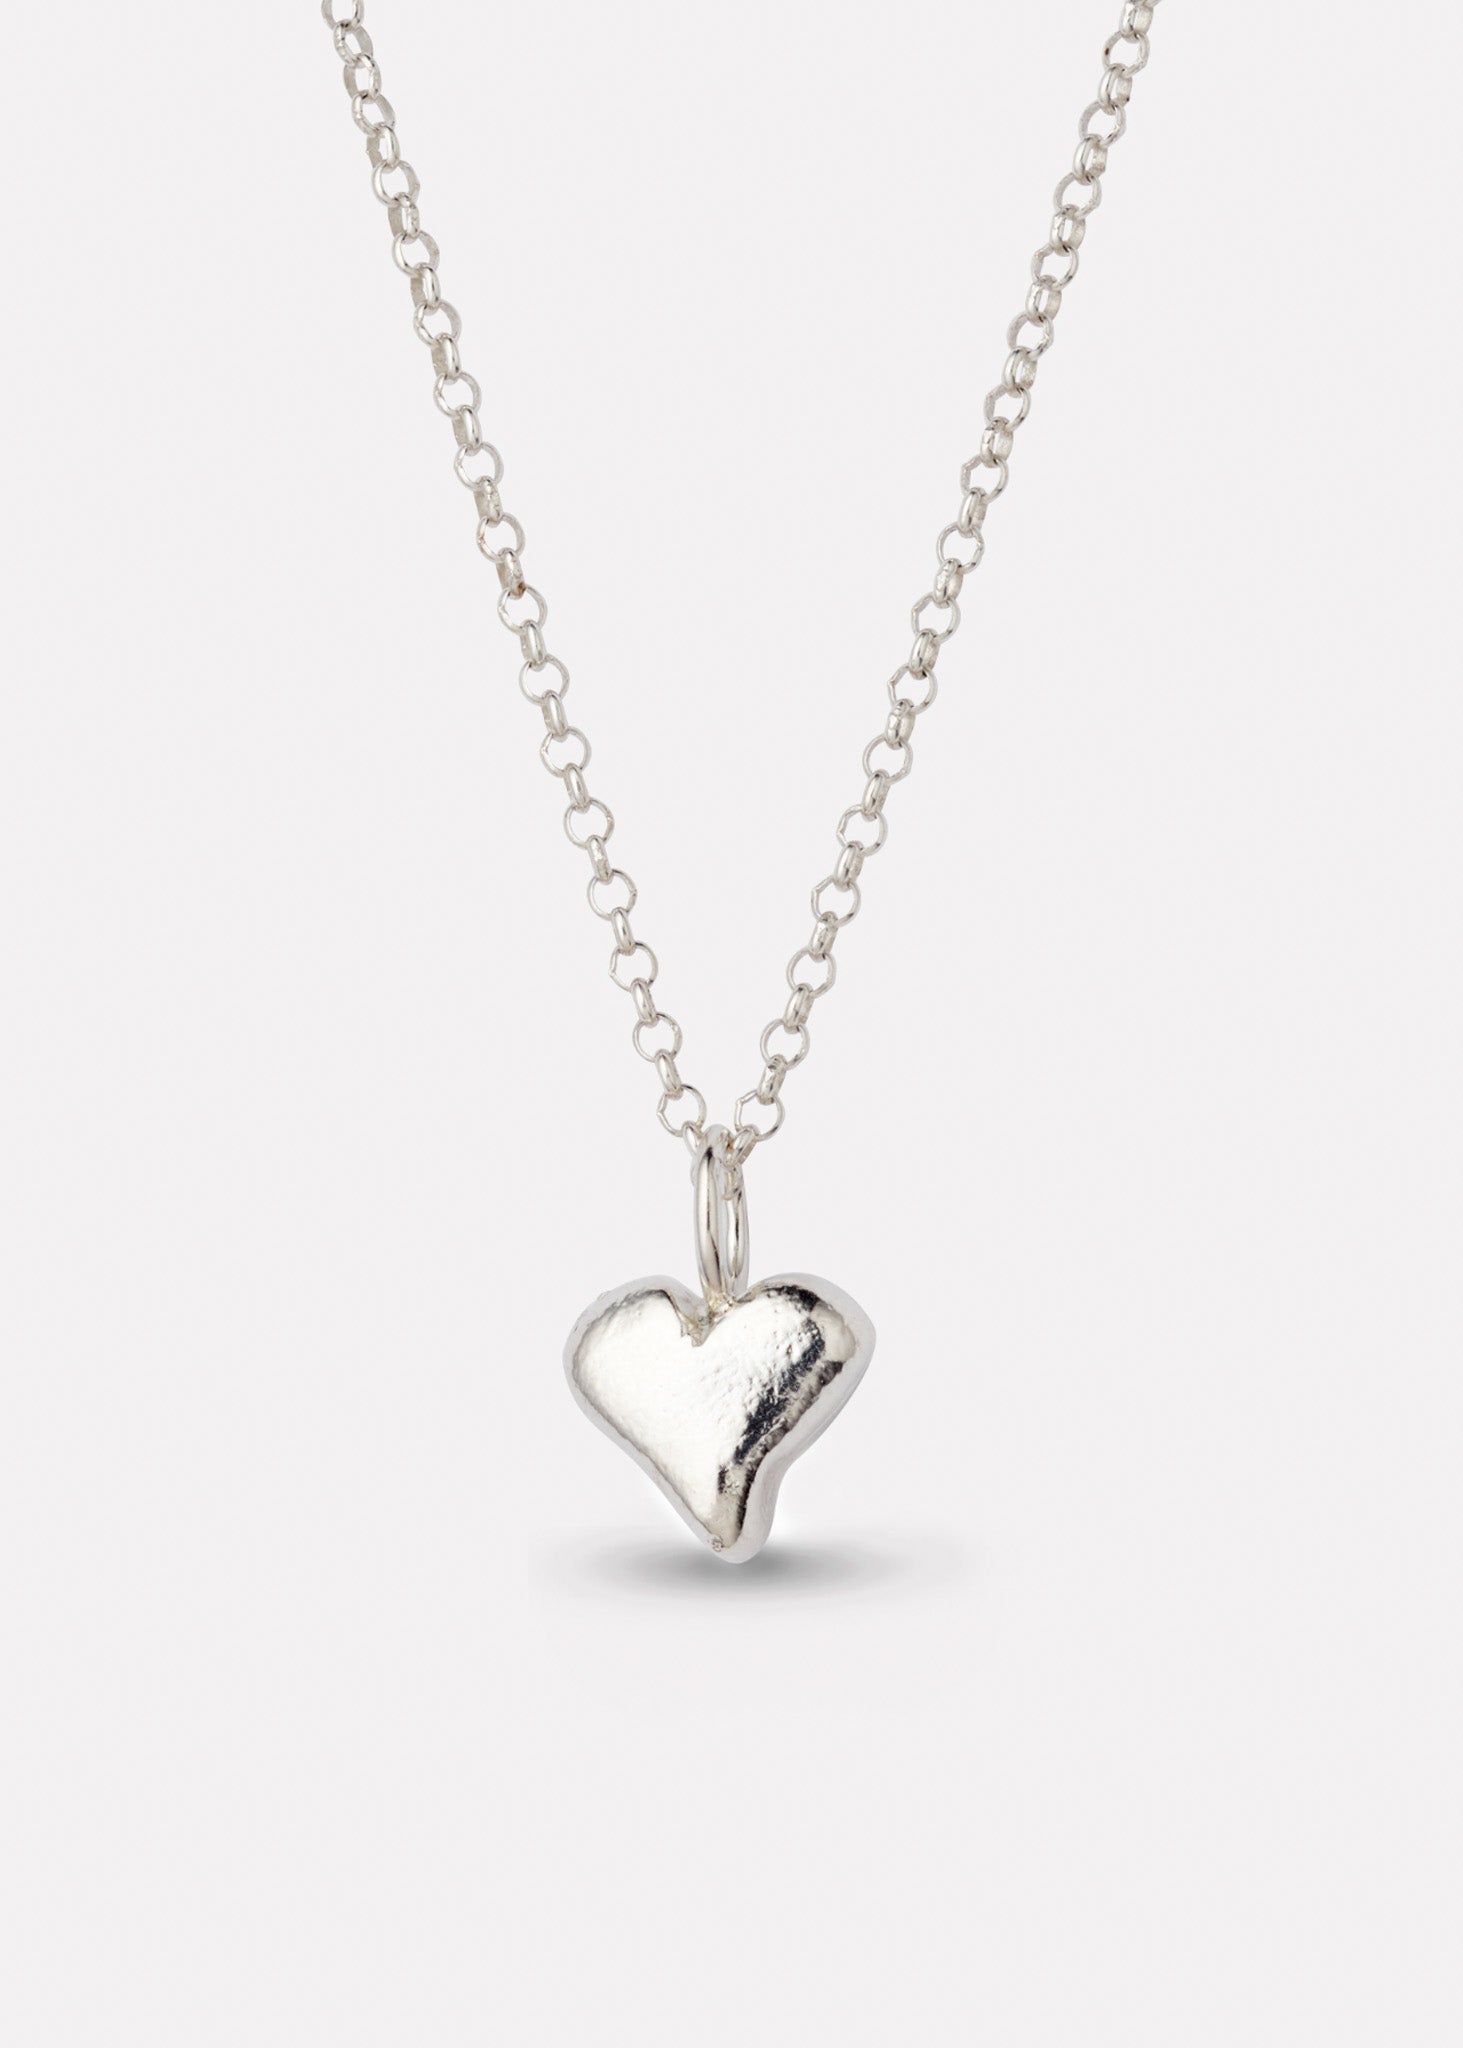 Mia heart pendant in silver with chain, medium